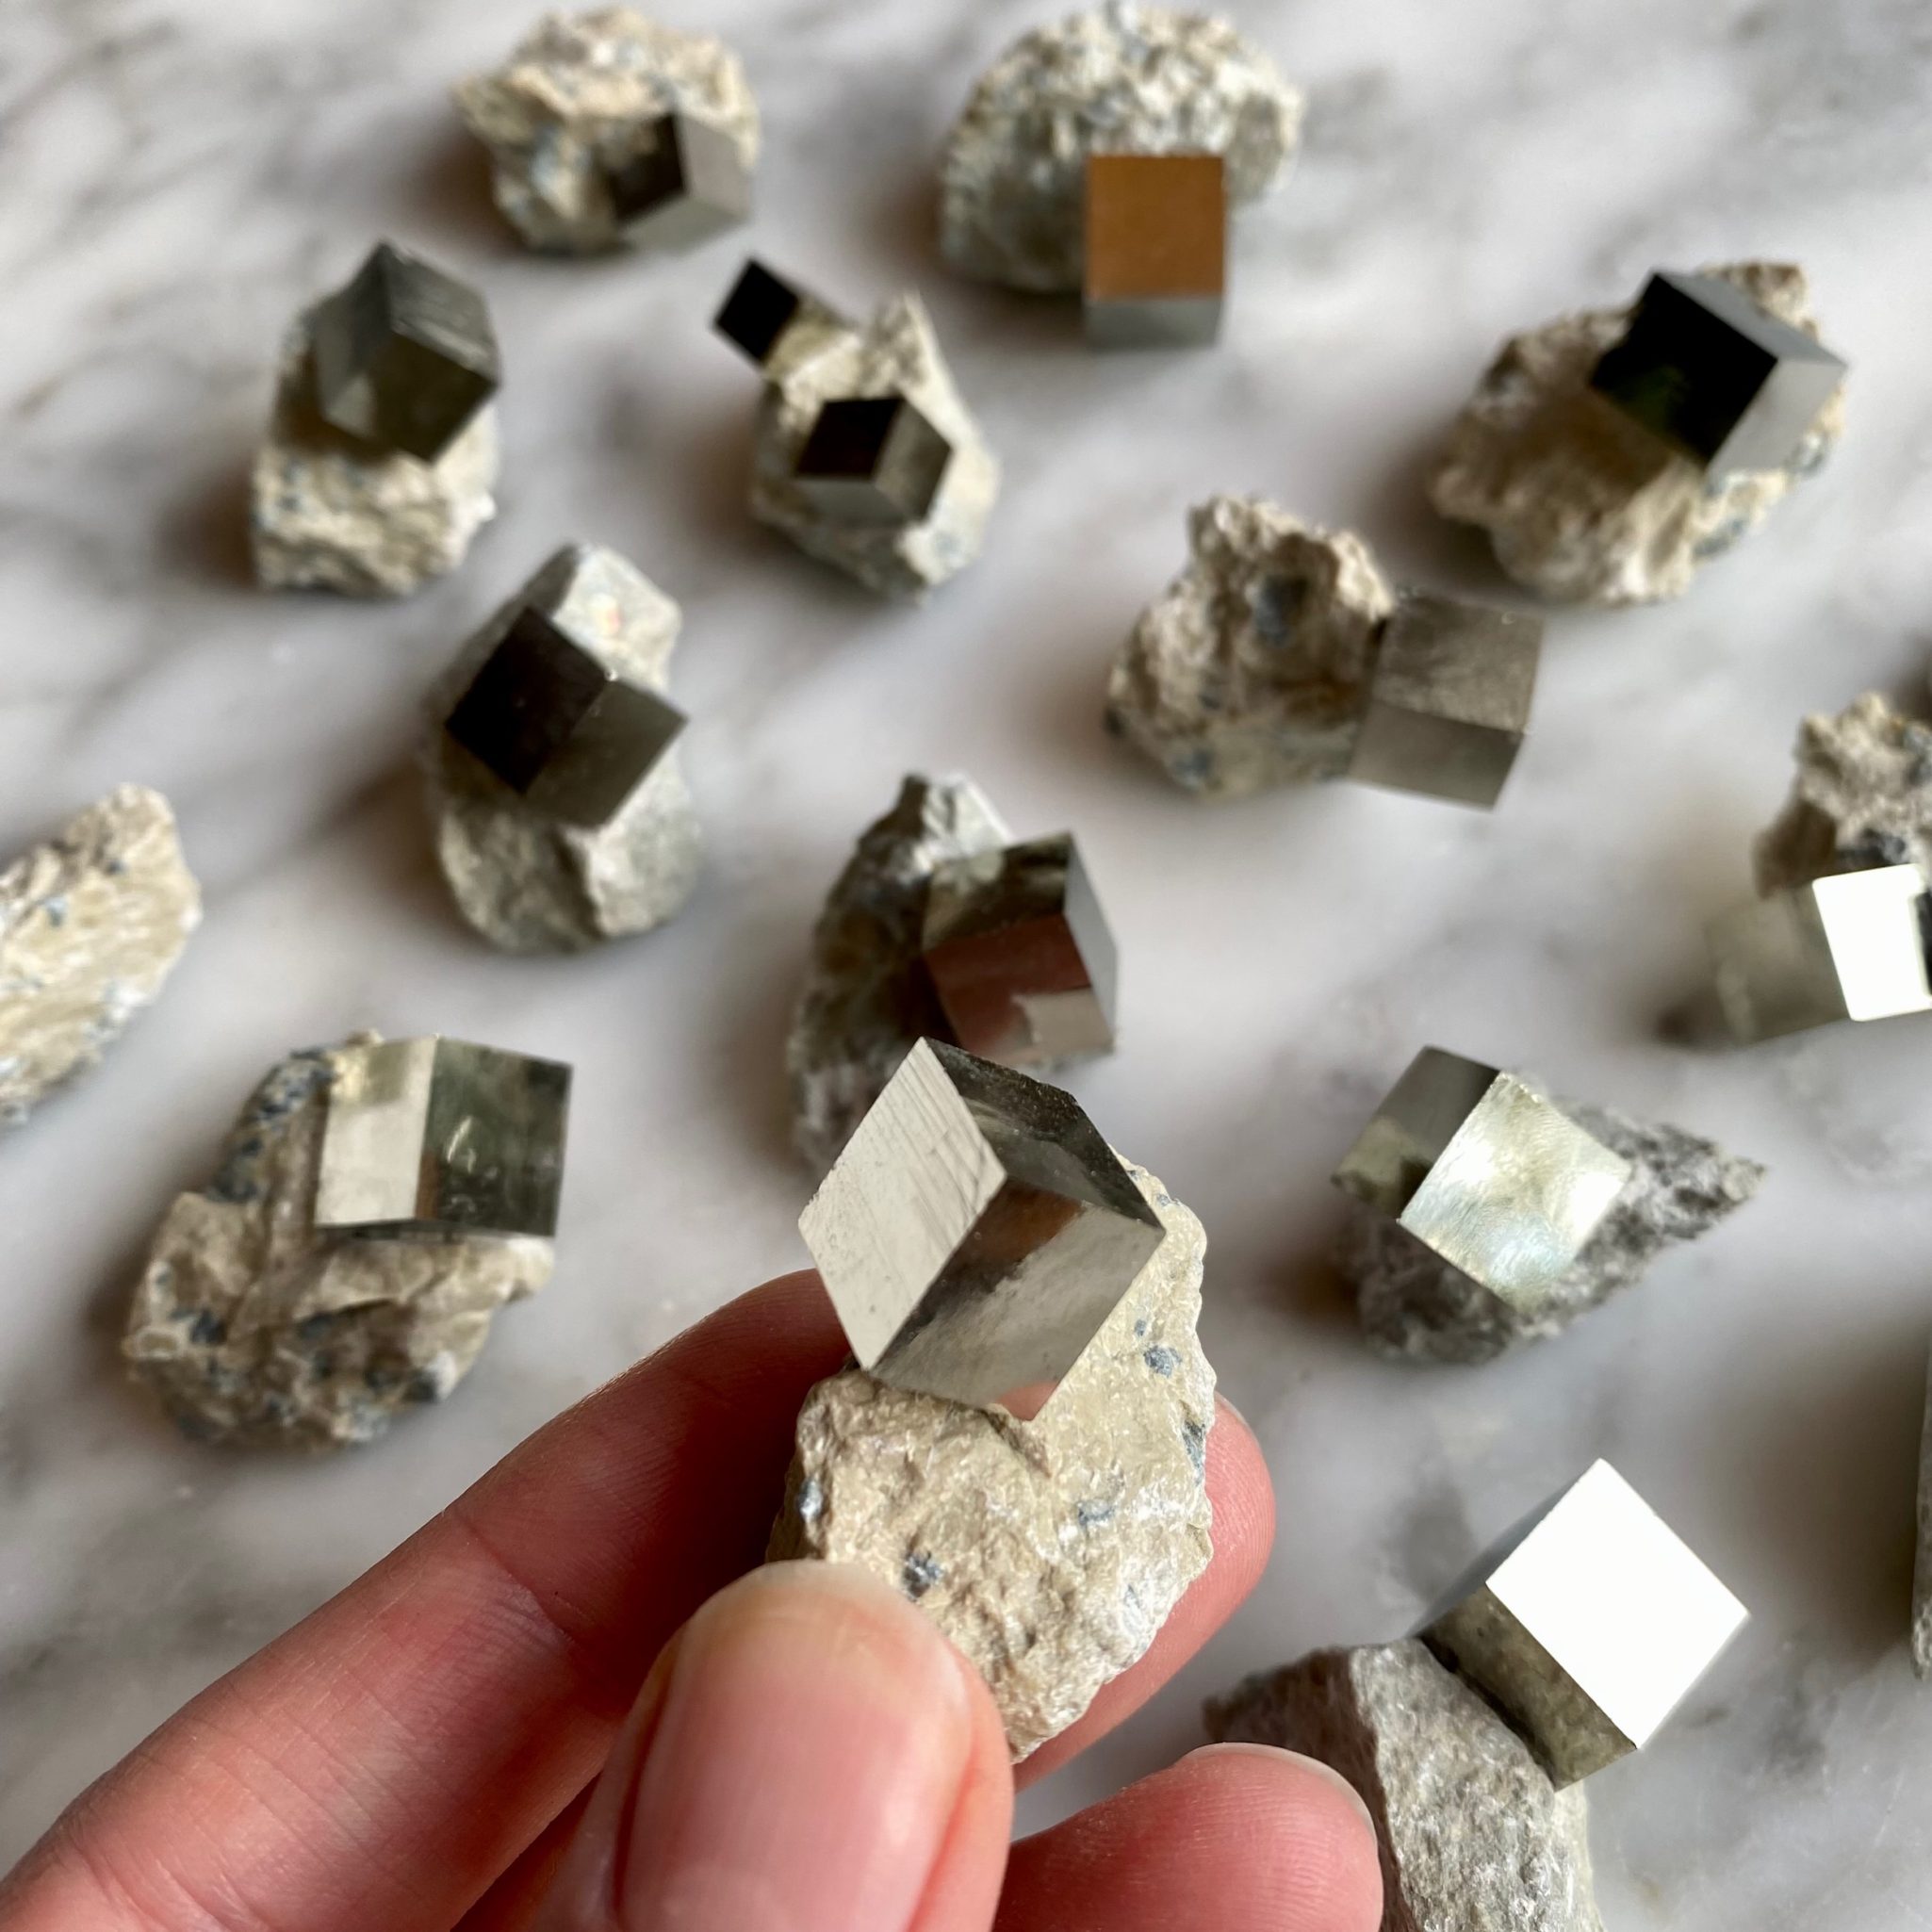 pyrite cube specimen on matrix - spécimen de cube de pyrite sur matrice